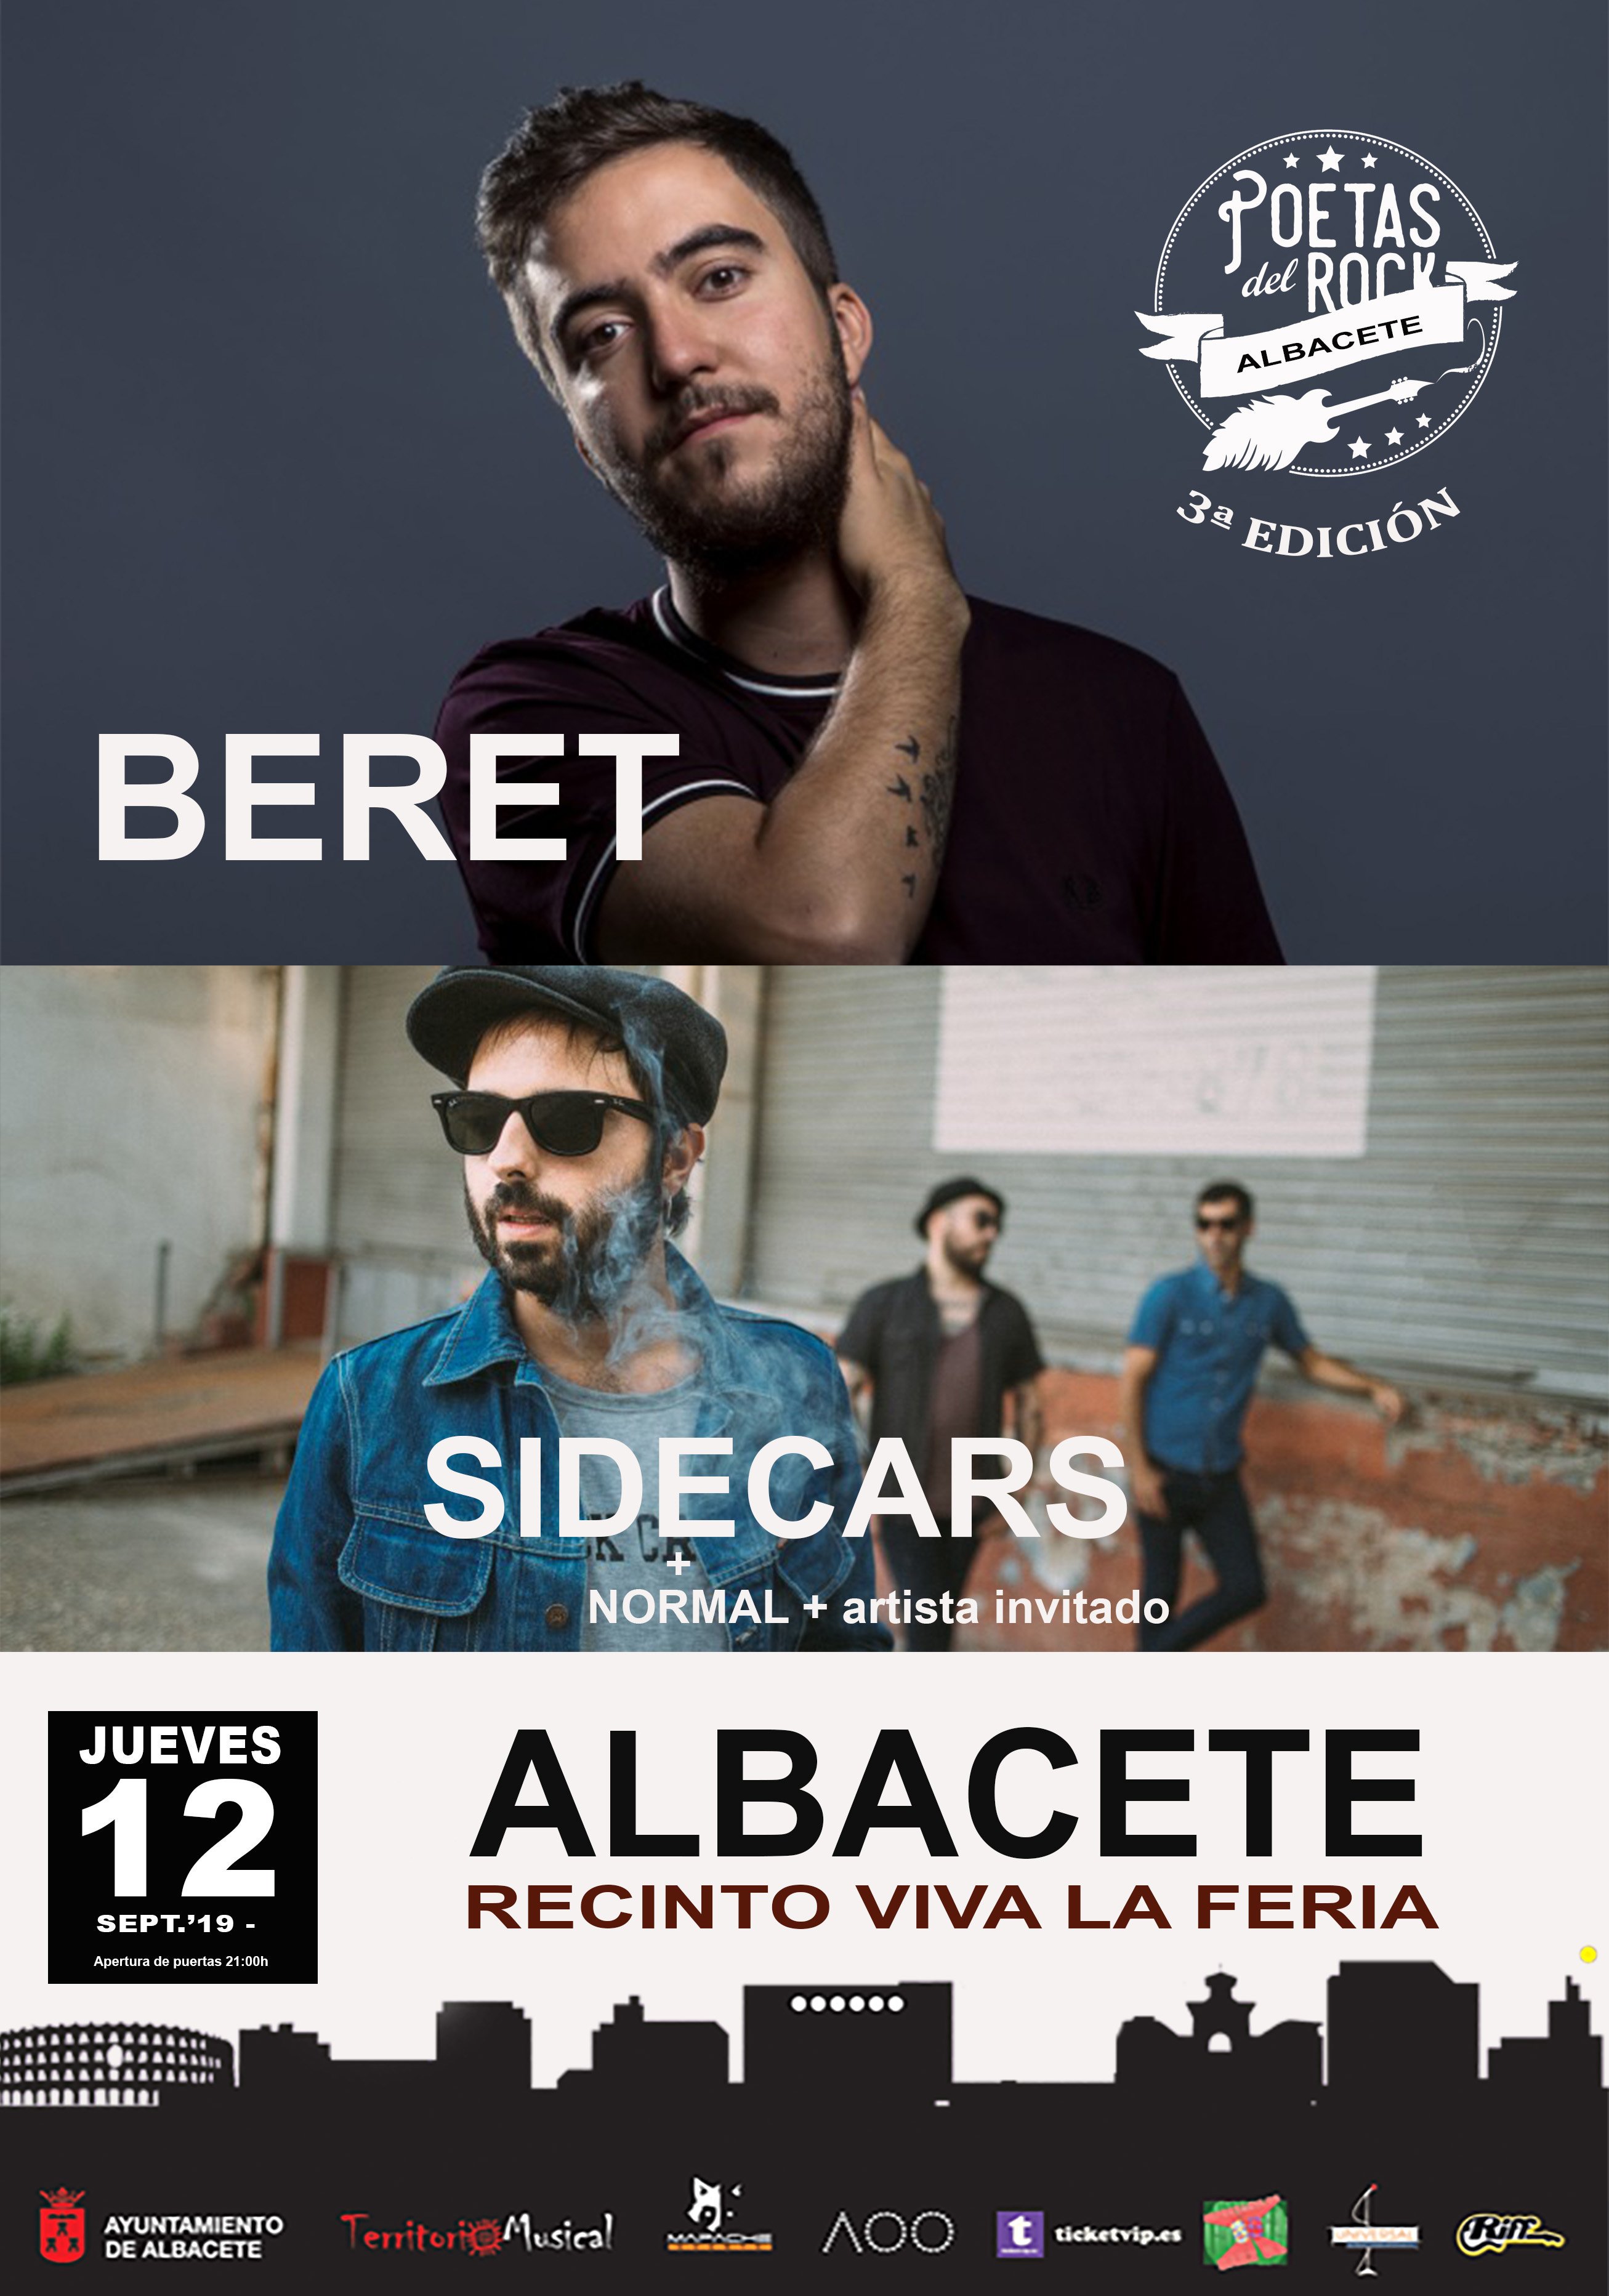 Festival Poetas del Rock: Beret, Sidecars y Normal